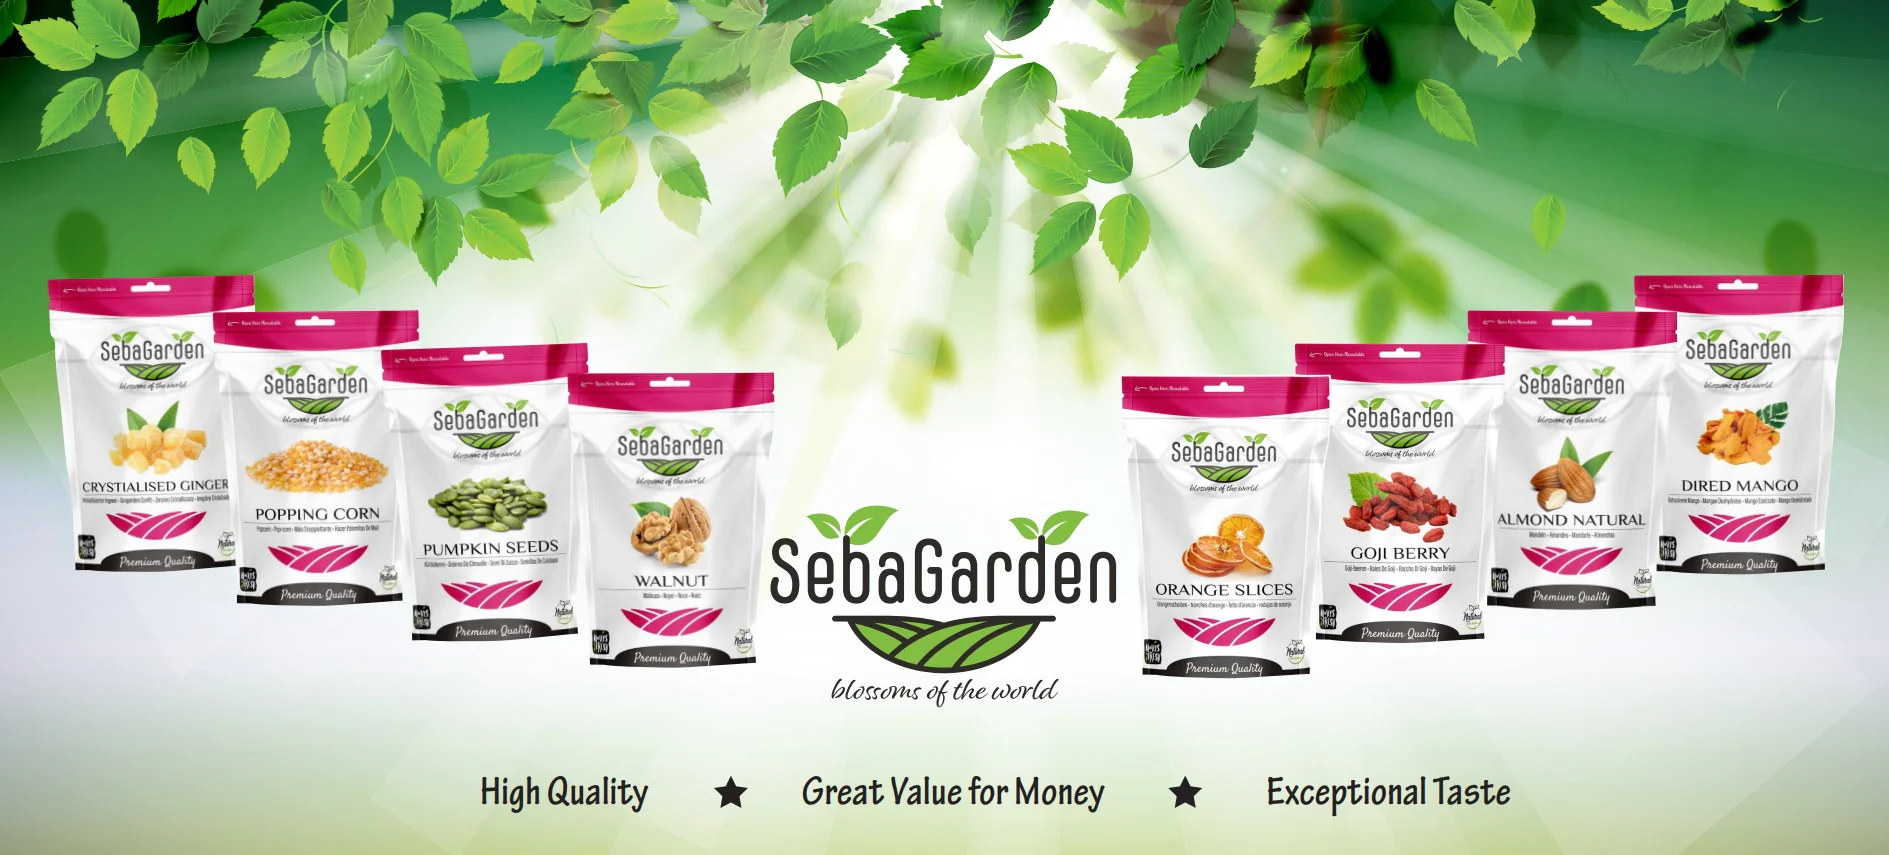 Seba Garden Products